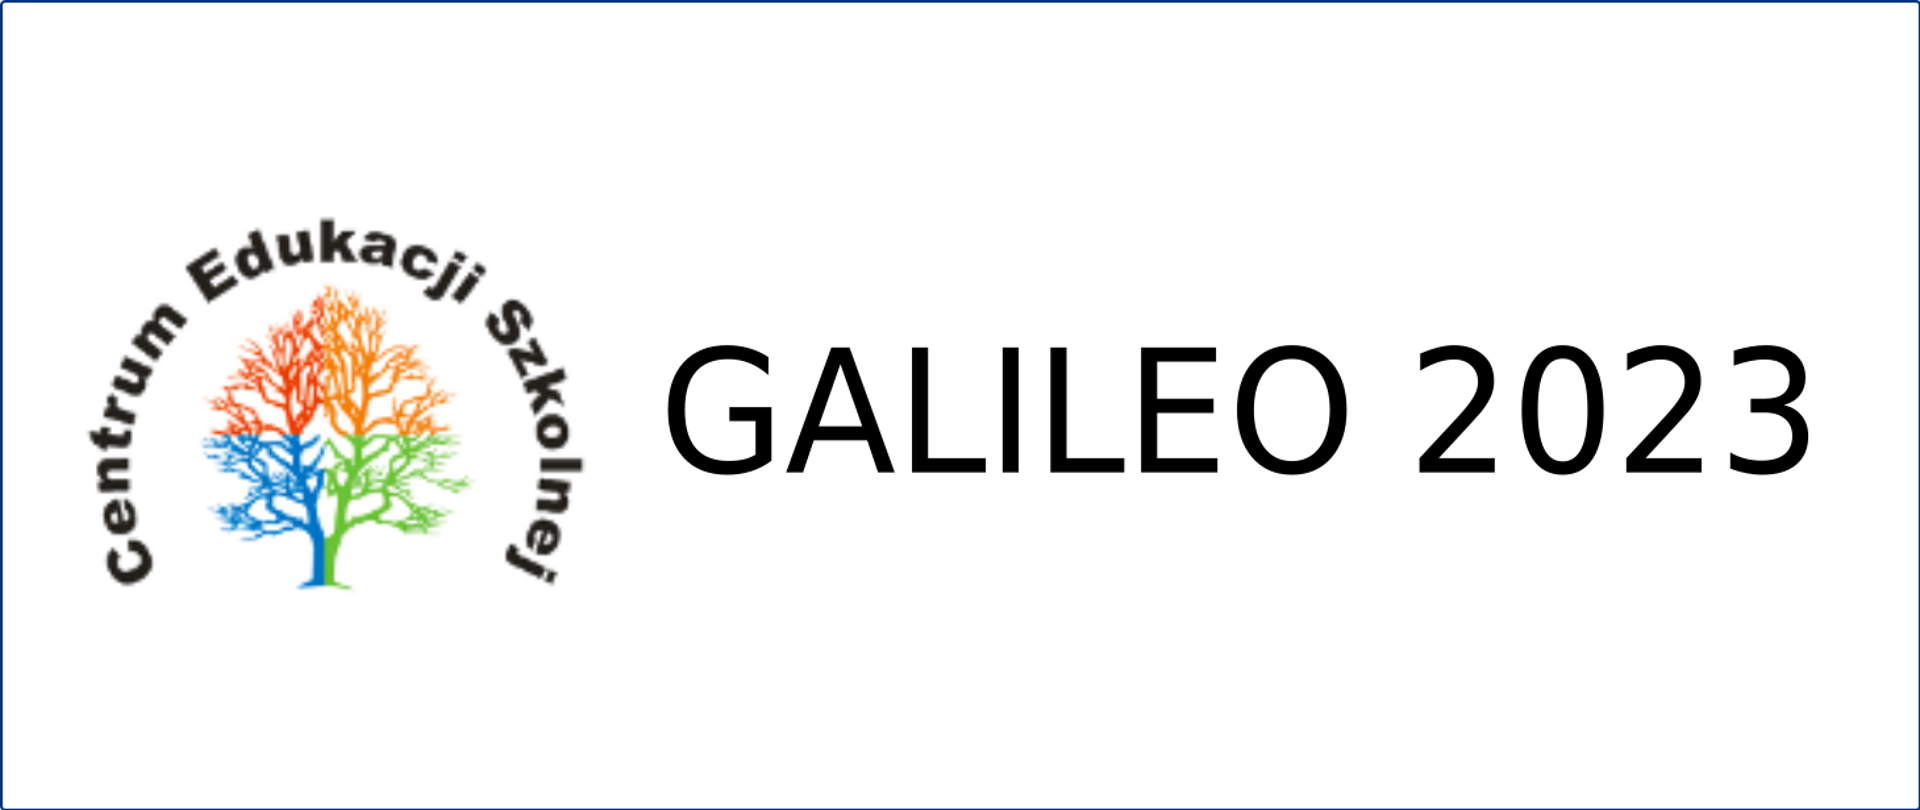 Po lewej łuk z napisu Centrum Edukacji Szkolnej, pod nim zarys drzewa w kolorach niebieskim czerwonym pomarańczowym i zielonym. Po prawej Napis Galileo 2023